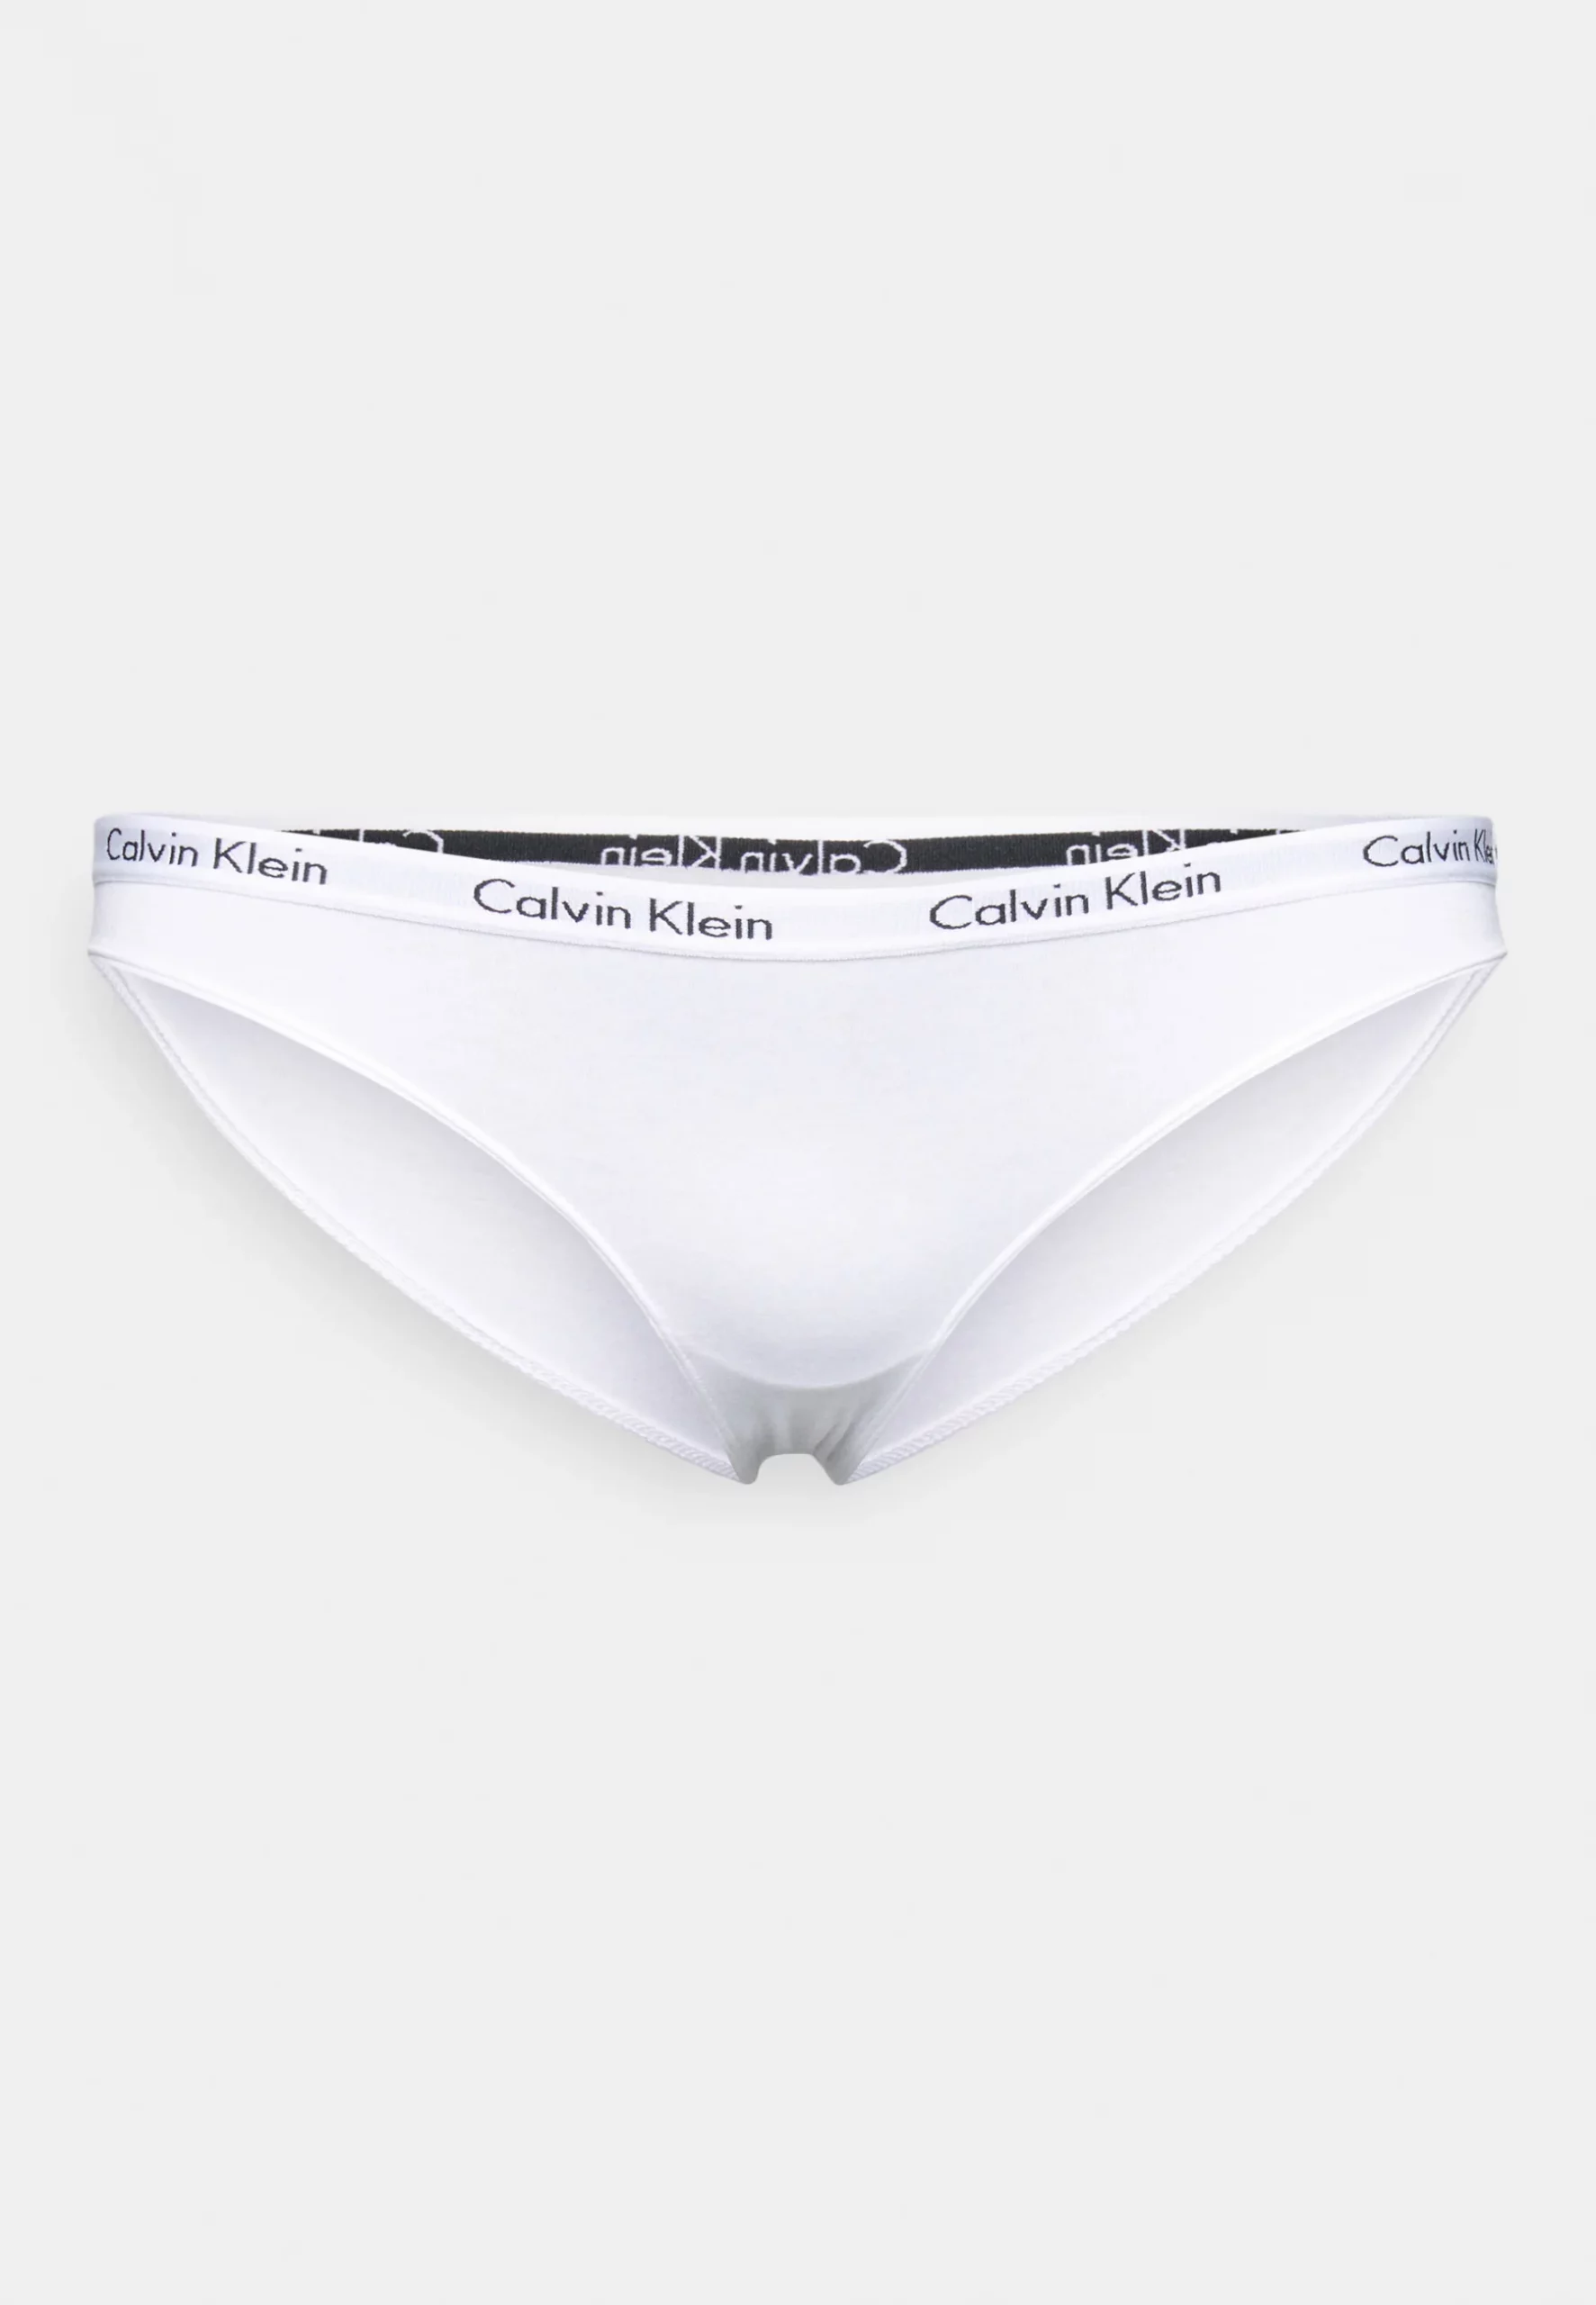 Calvin Klein Woman Underwear 3-Pack - Fashion Outlet